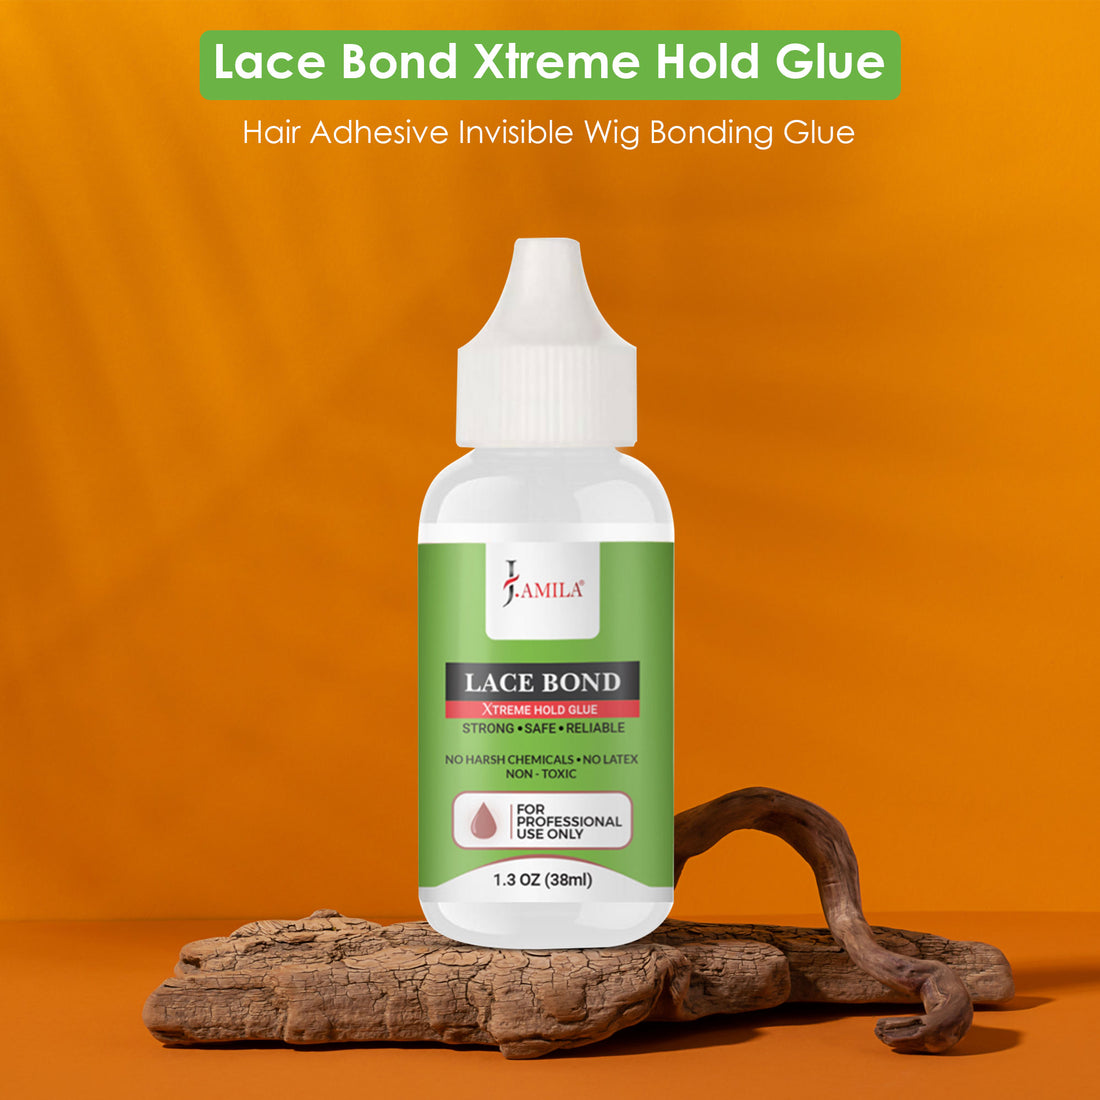 J. AMILA Lace Bond Xtreme Hold Glue (1.3oz)